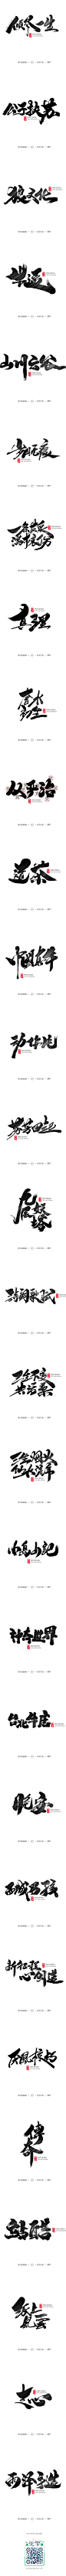 雨泽字造/十月毛笔字②-字体传奇网-中国首个字体品牌设计师交流网